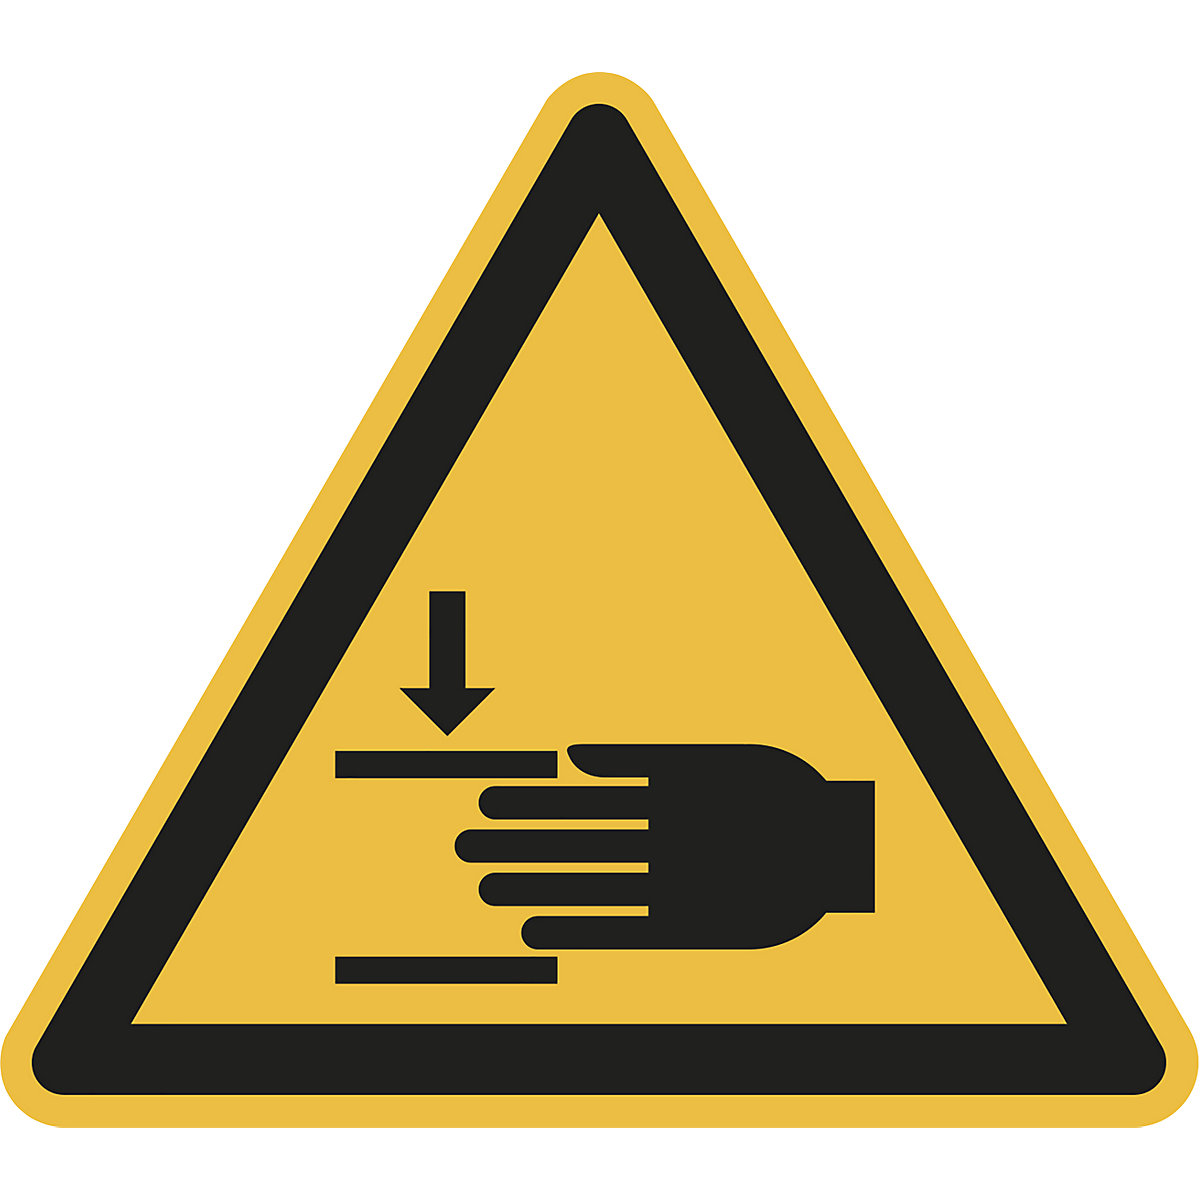 Hazard signs